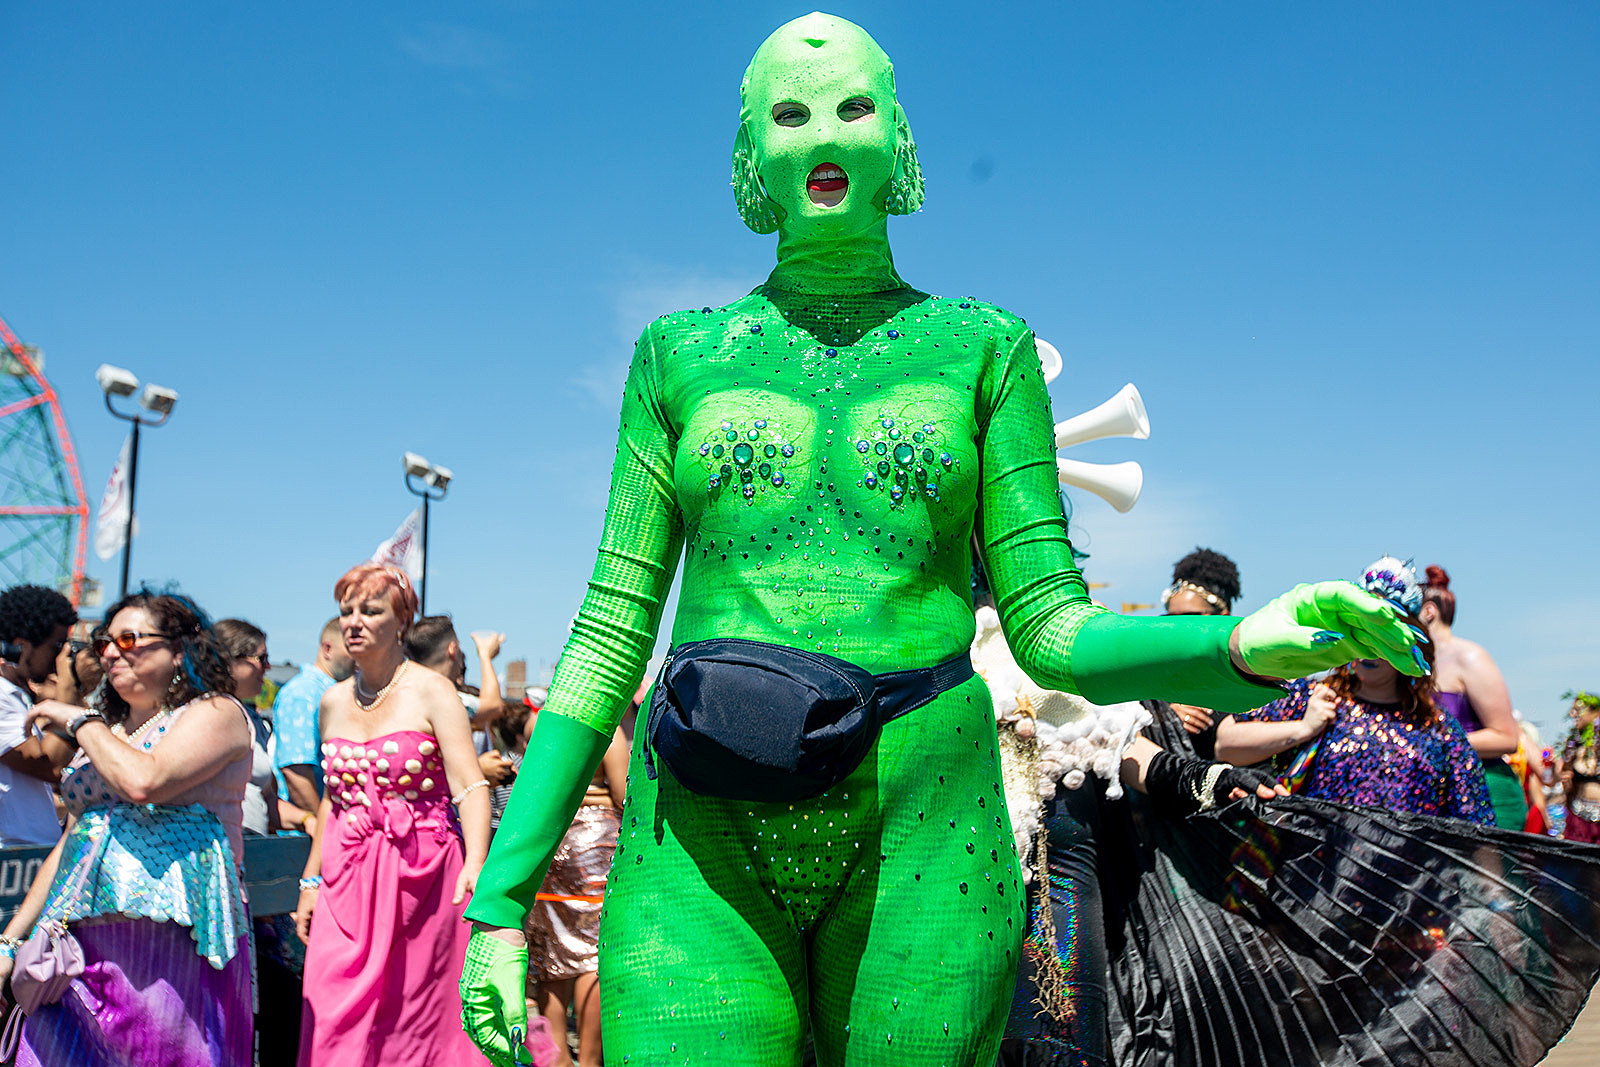 The 2018 Coney Island Mermaid Parade